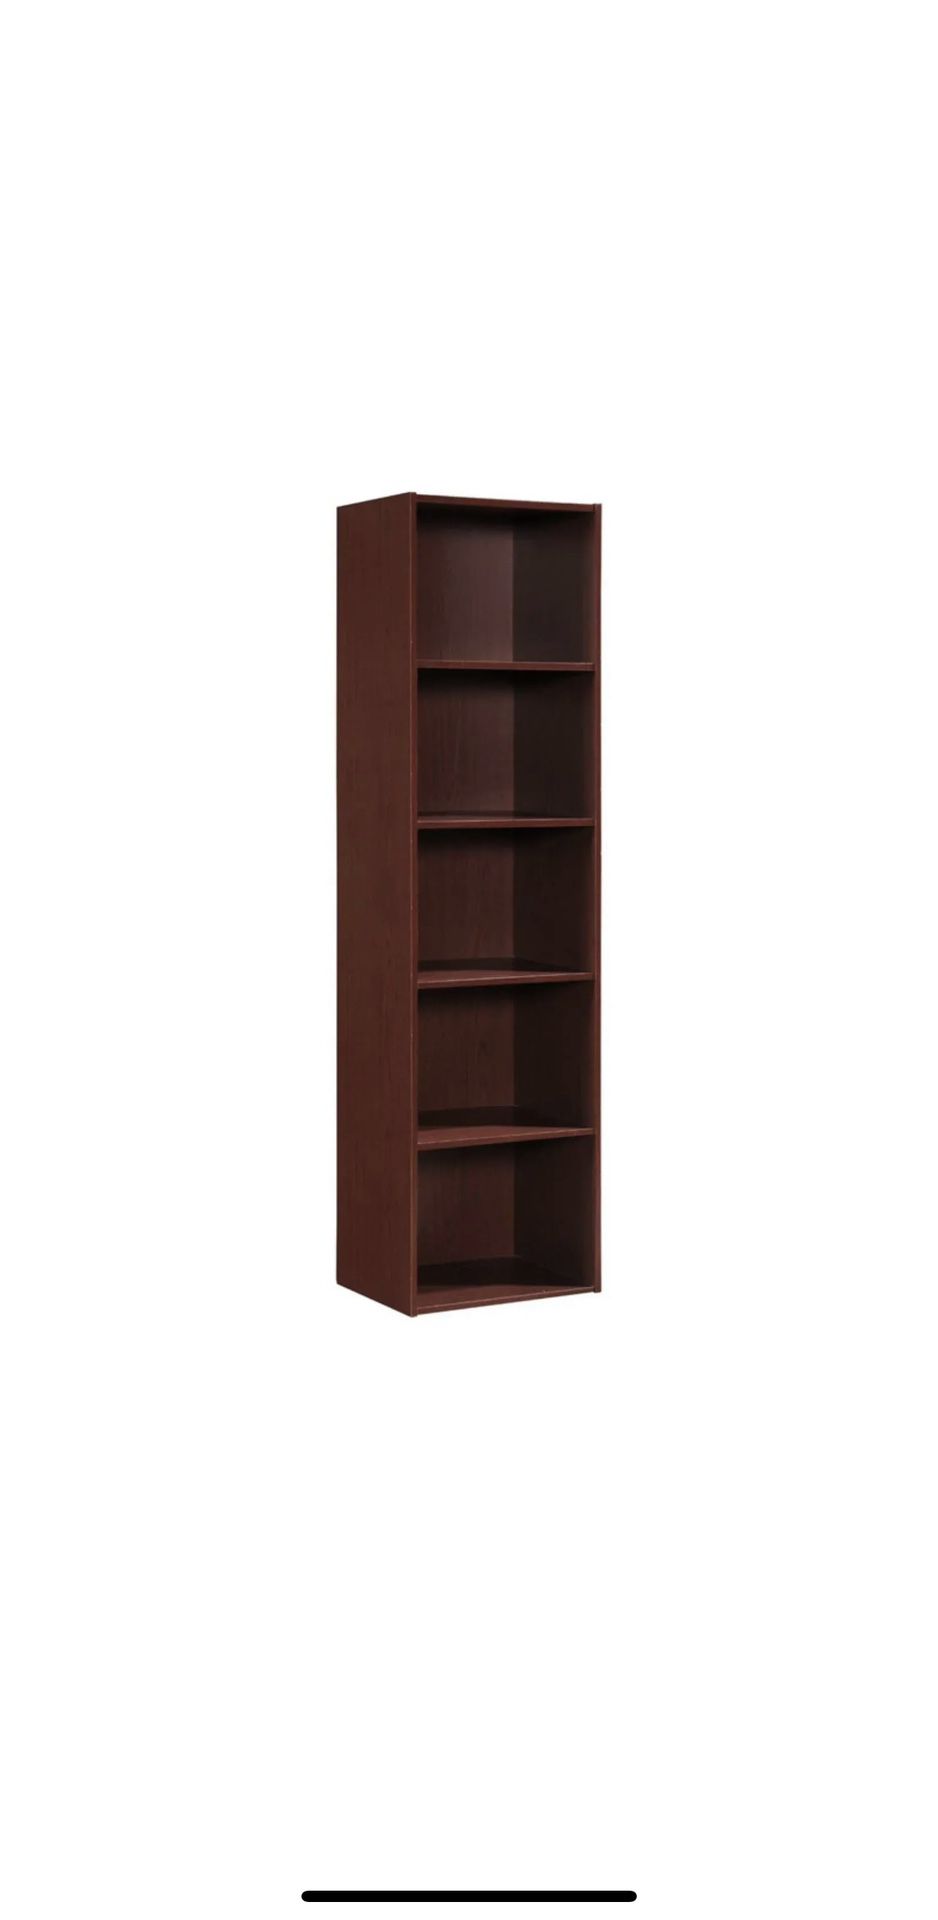  Shelf Bookcase Organizer, Mahogany Wood Finish